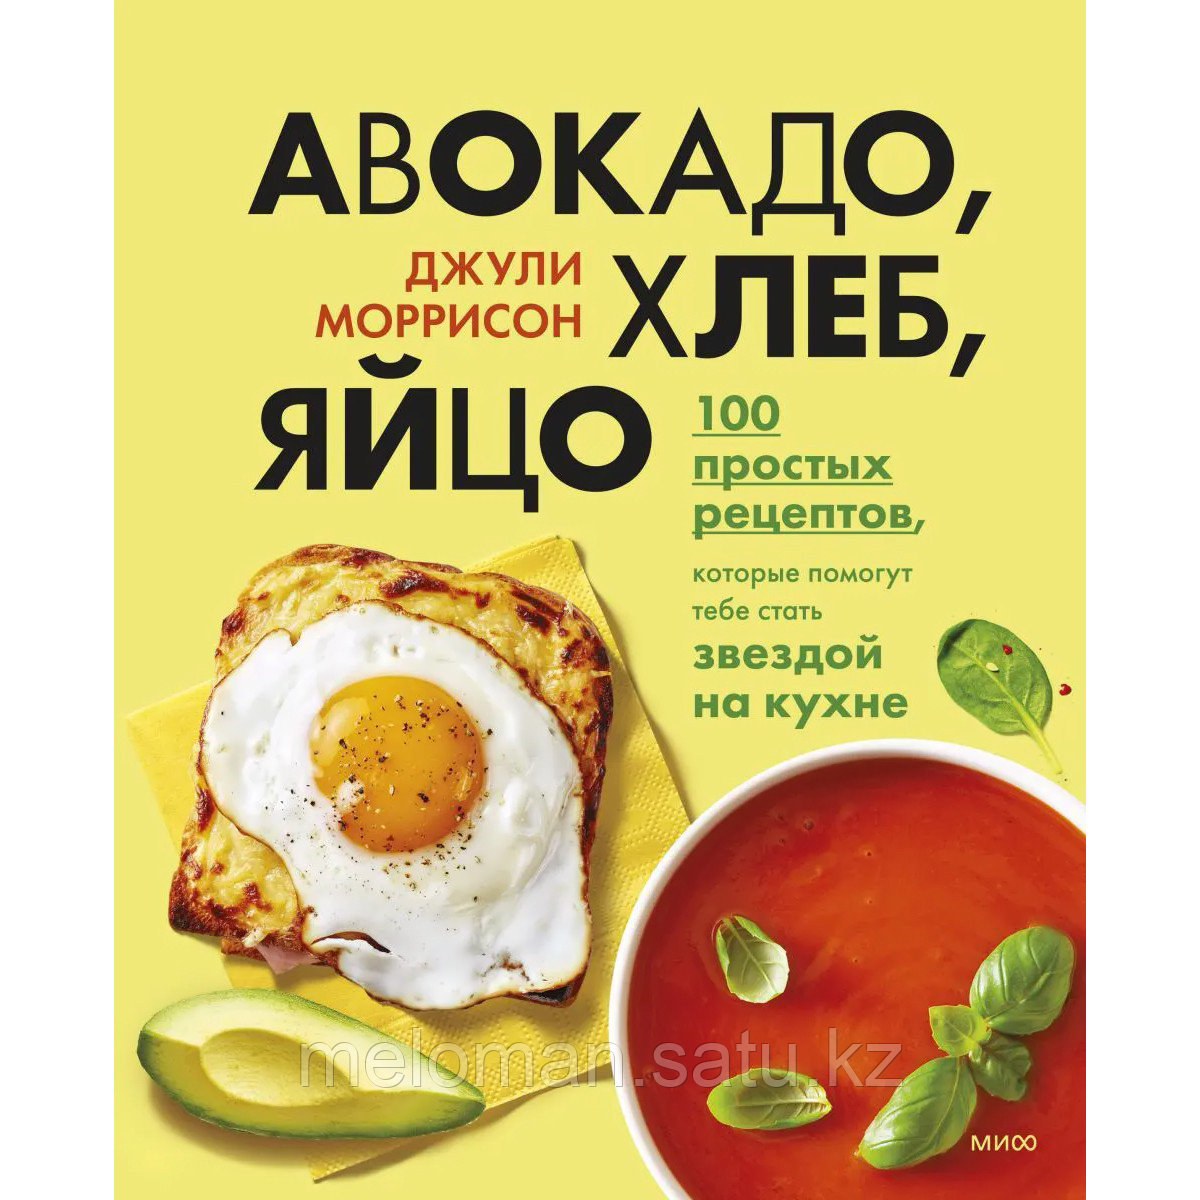 Моррисон Дж.: Авокадо, хлеб, яйцо. 100 простых рецептов, которые помогут тебе стать звездой на кухне